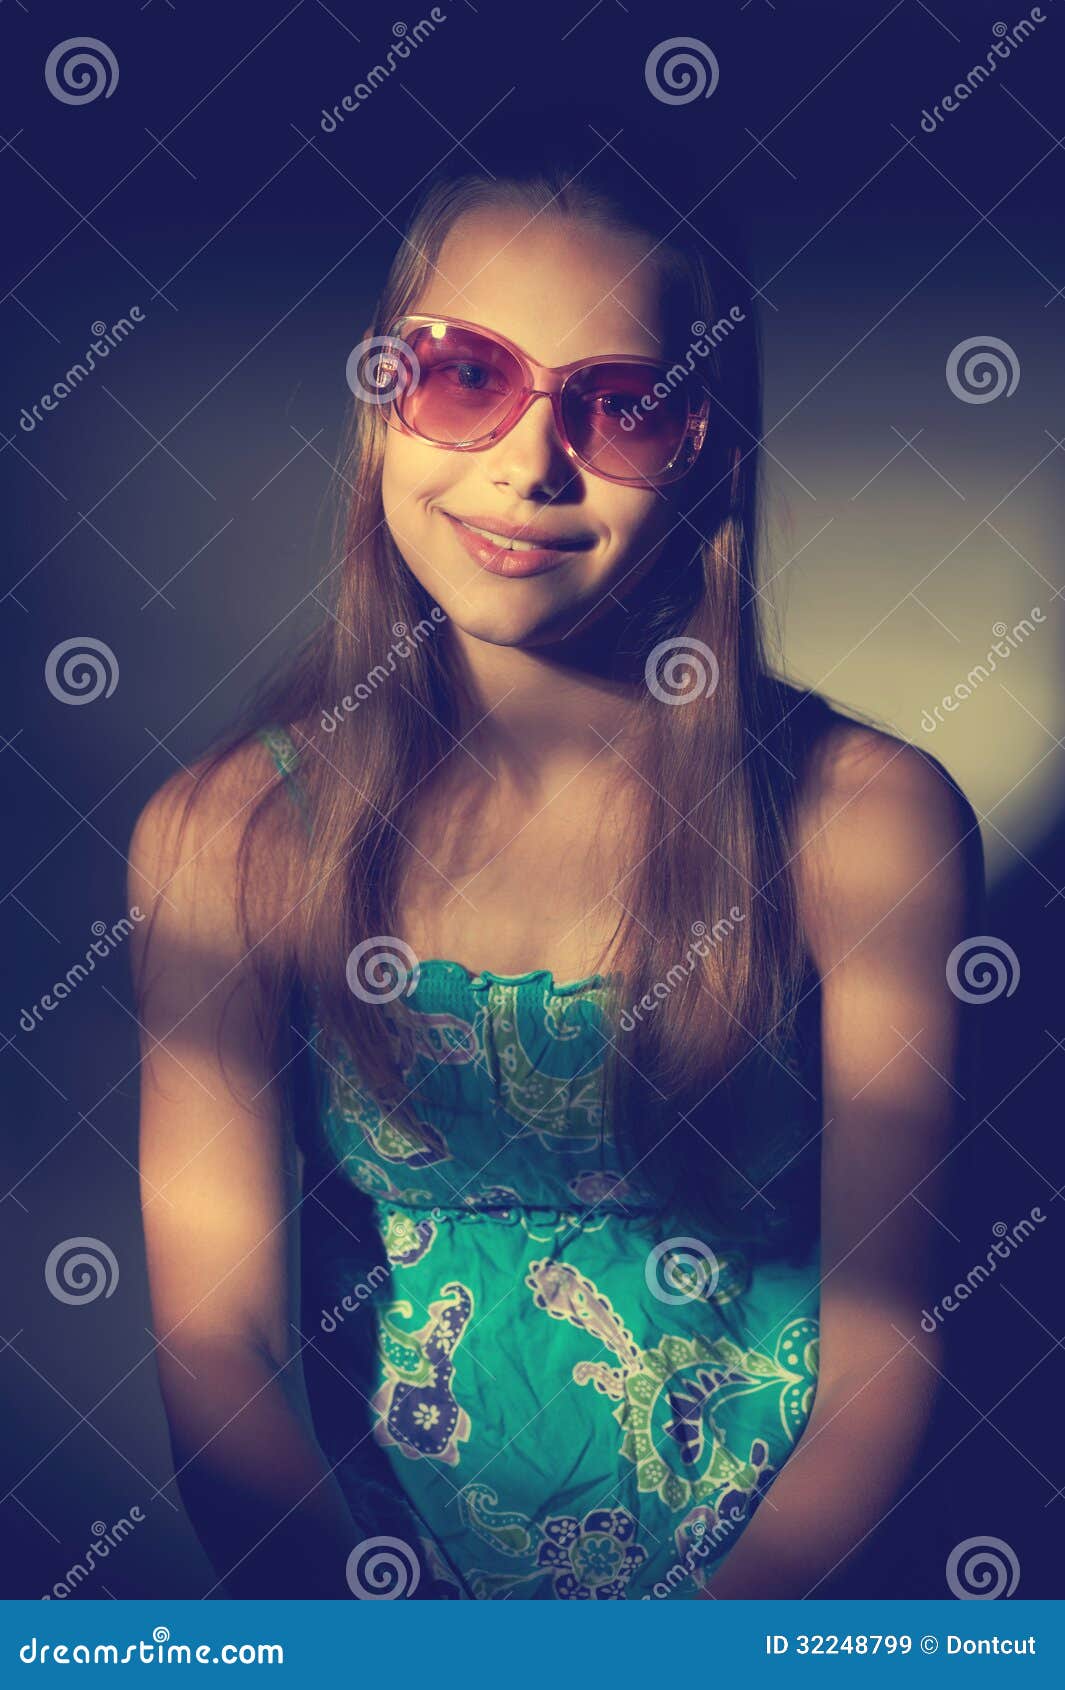 O Retrato De Uma Menina Adolescente Em Uma Sala Iluminou Se Pelo Sol Imagem De Stock Imagem De